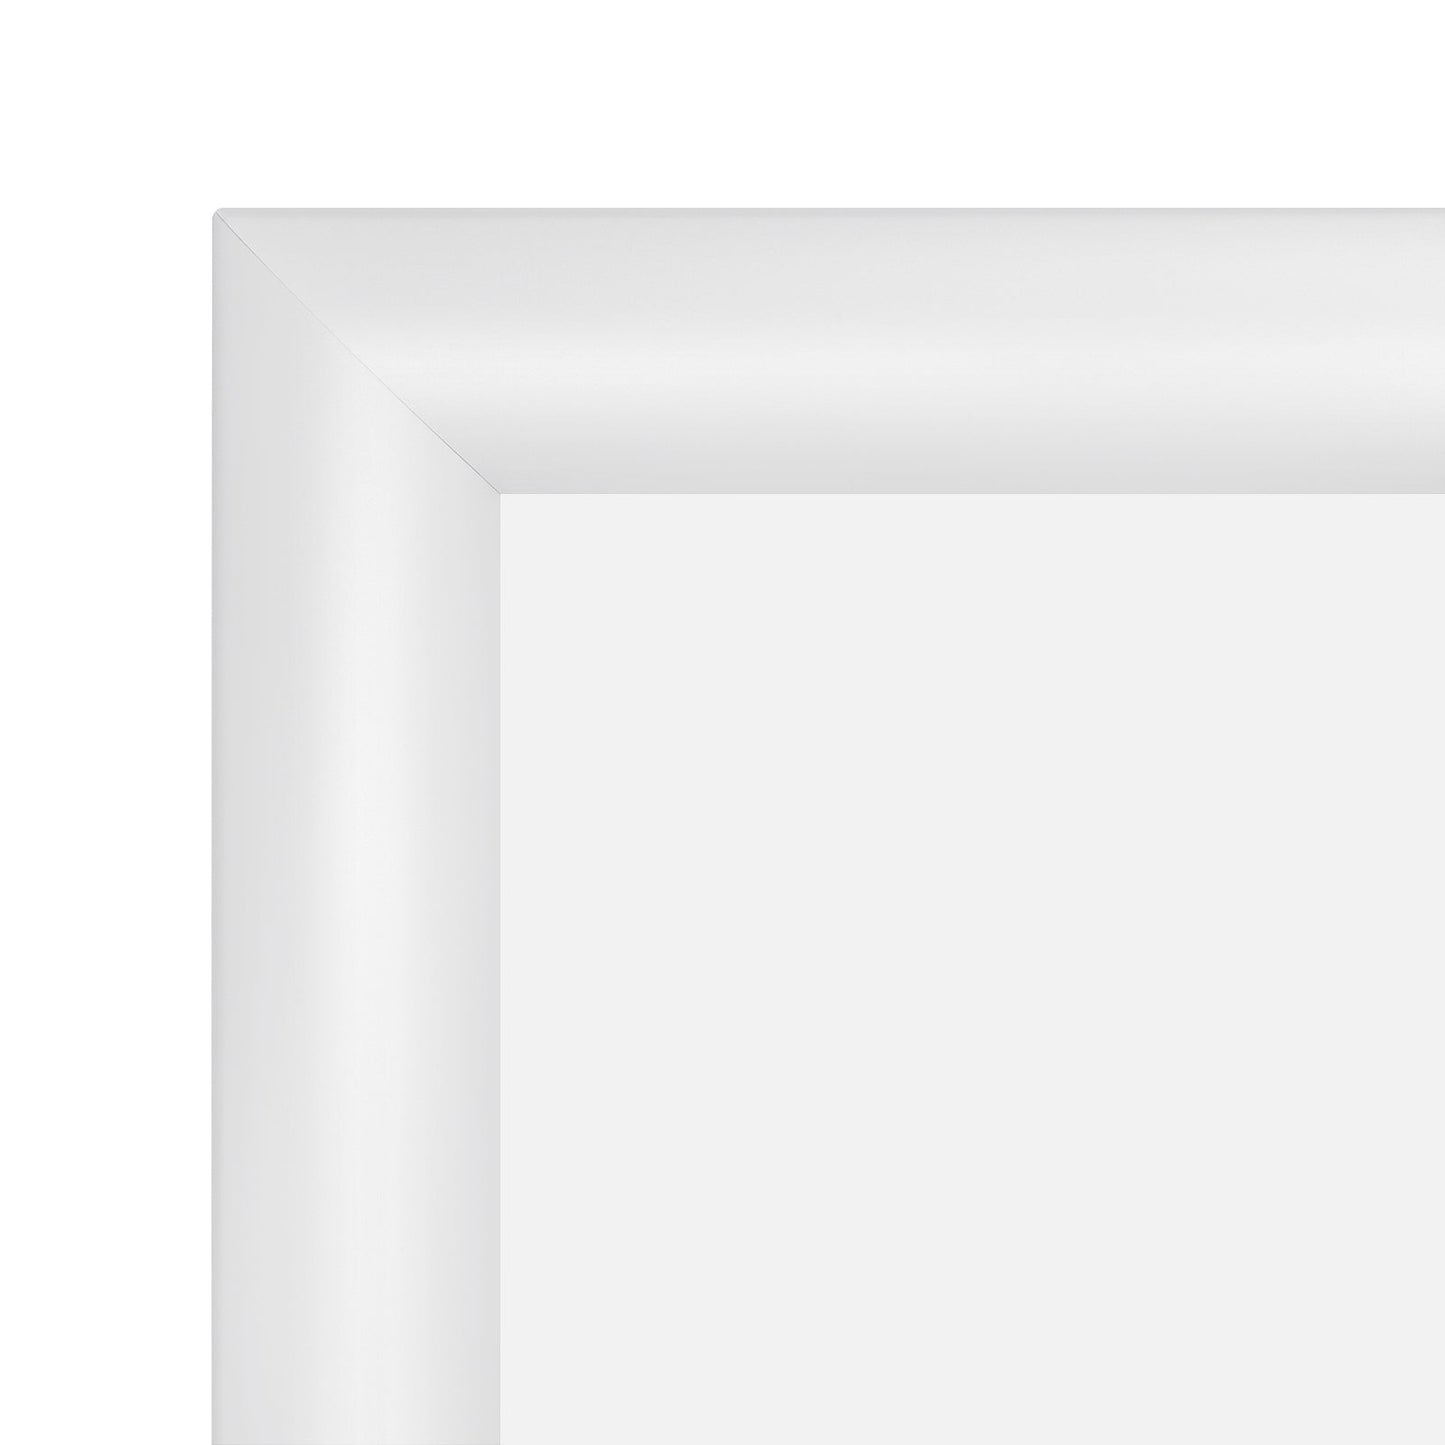 10x20 White SnapeZo® Snap Frame - 1.2" Profile